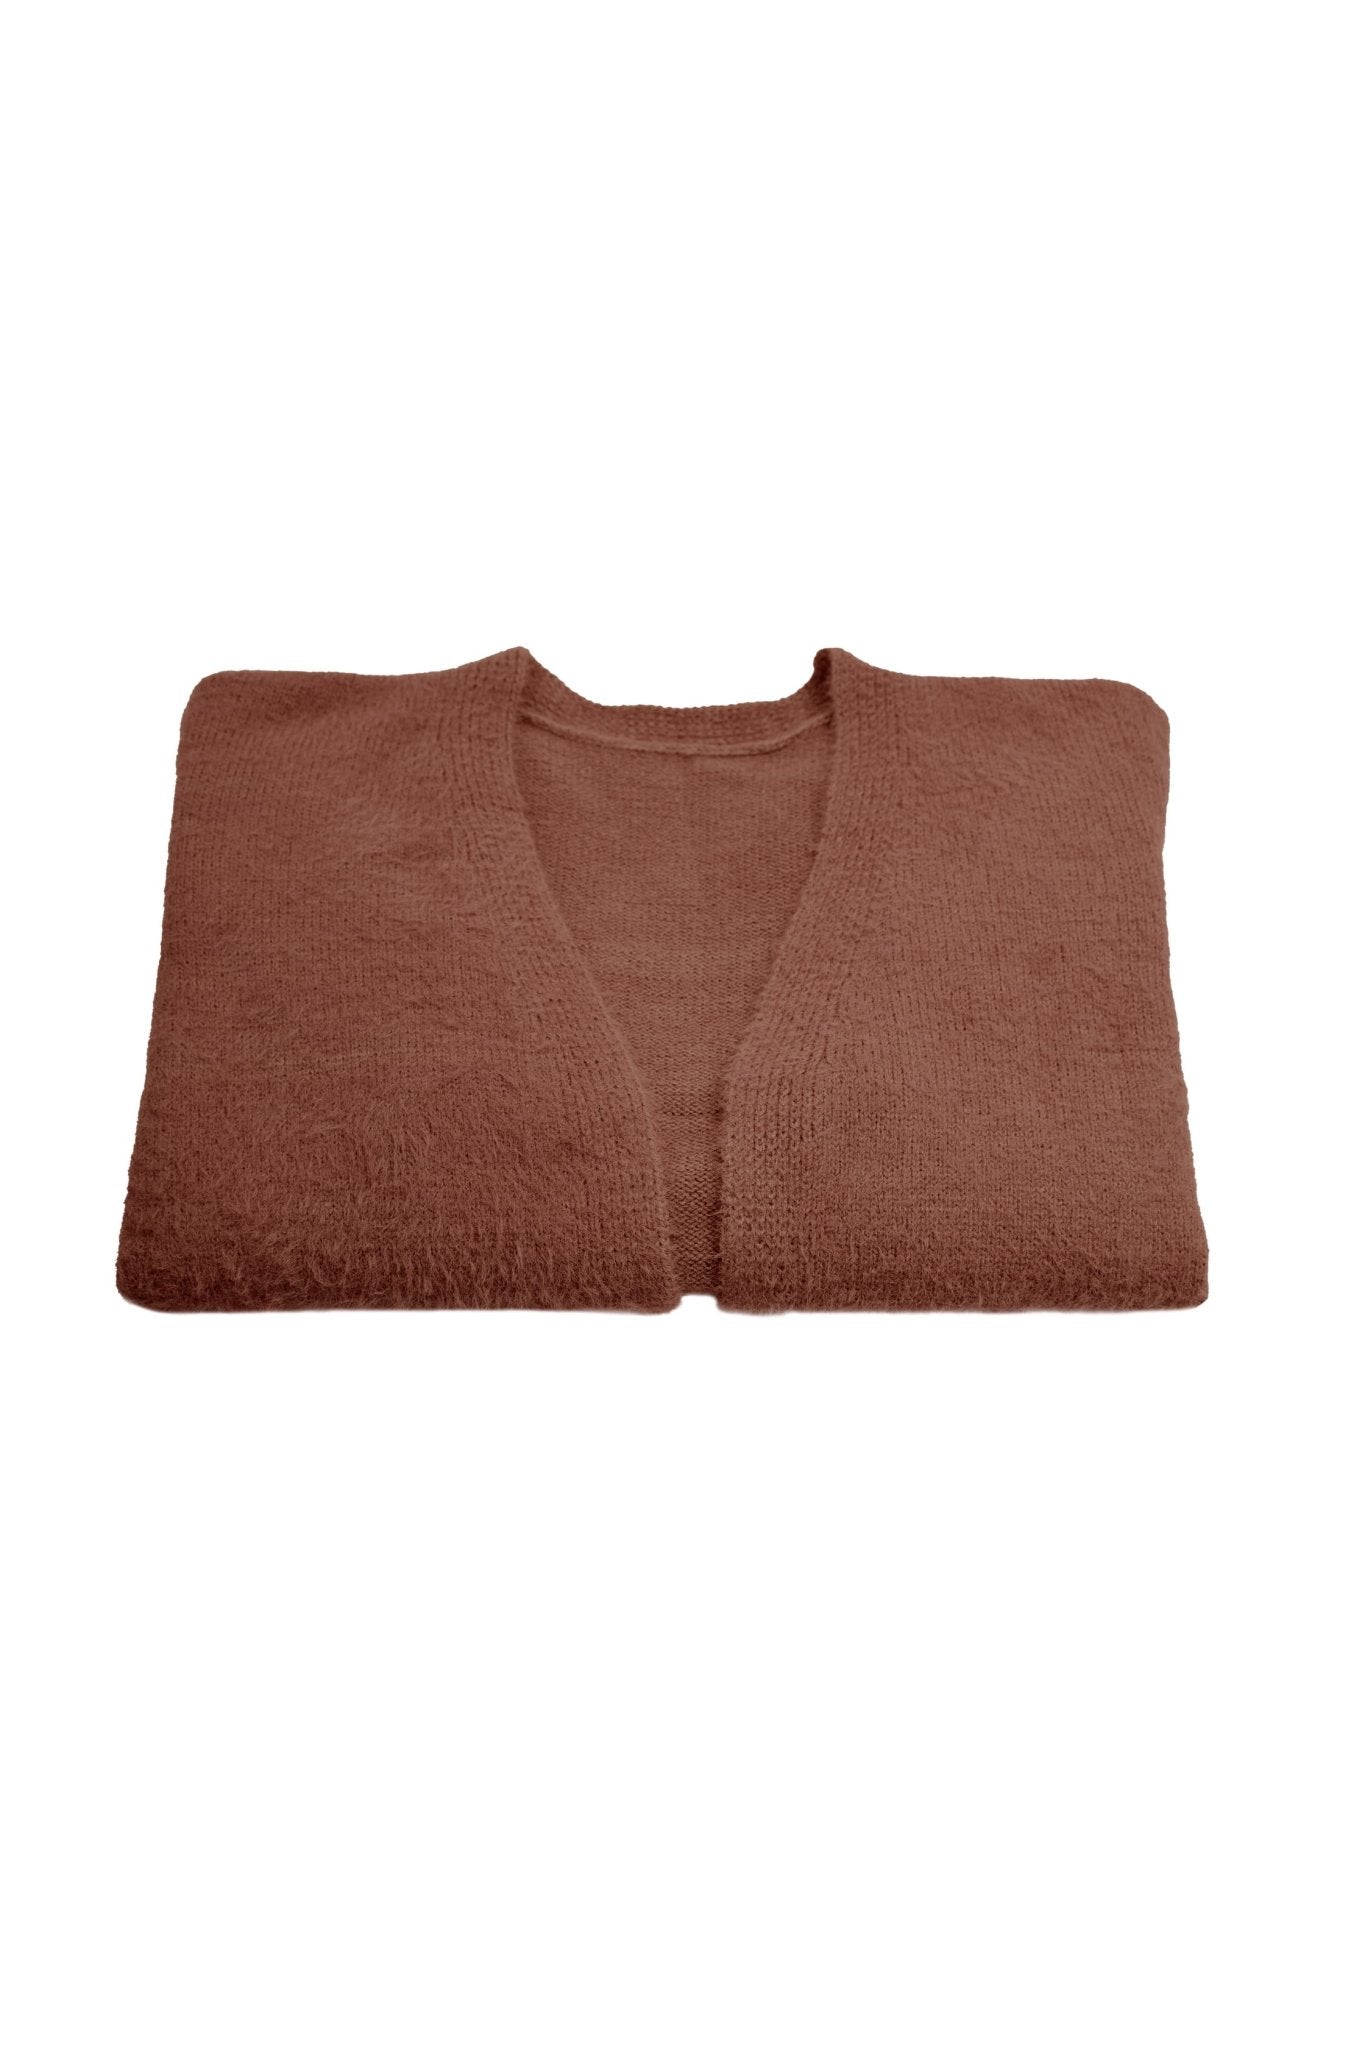 Short Cardigan Sweater - POSESHE